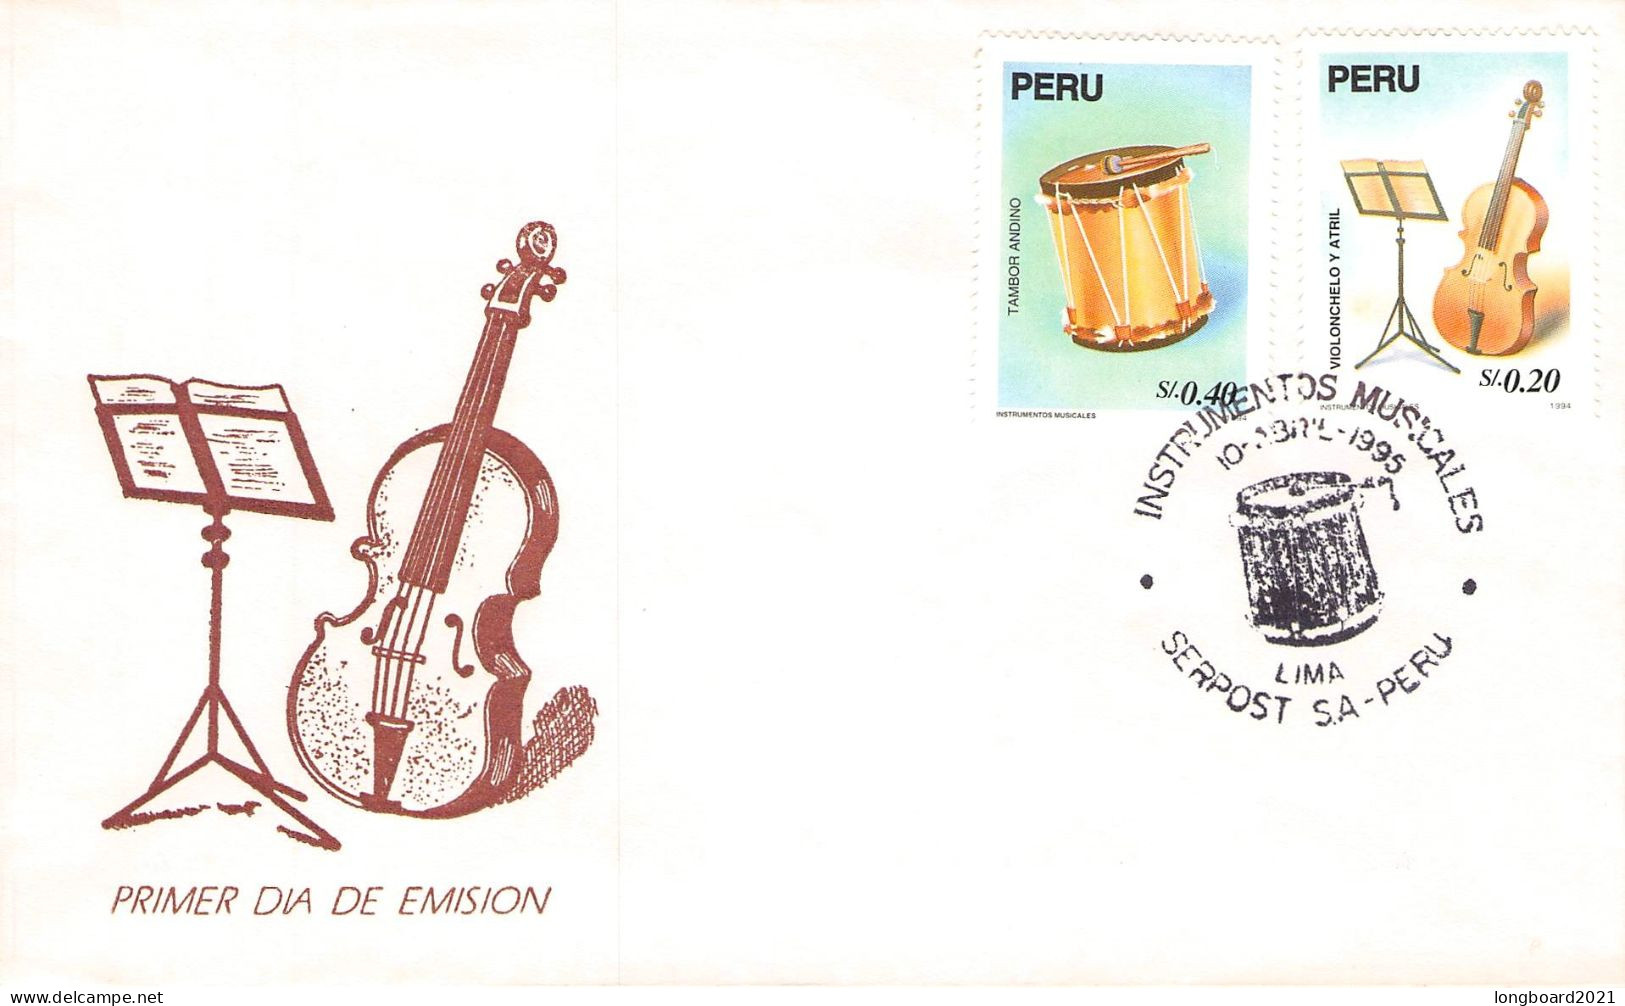 PERÚ - FDC 4-10-1995 INSTRUMENTOS MUSICALES Mi #1532/33 / 679 - Peru